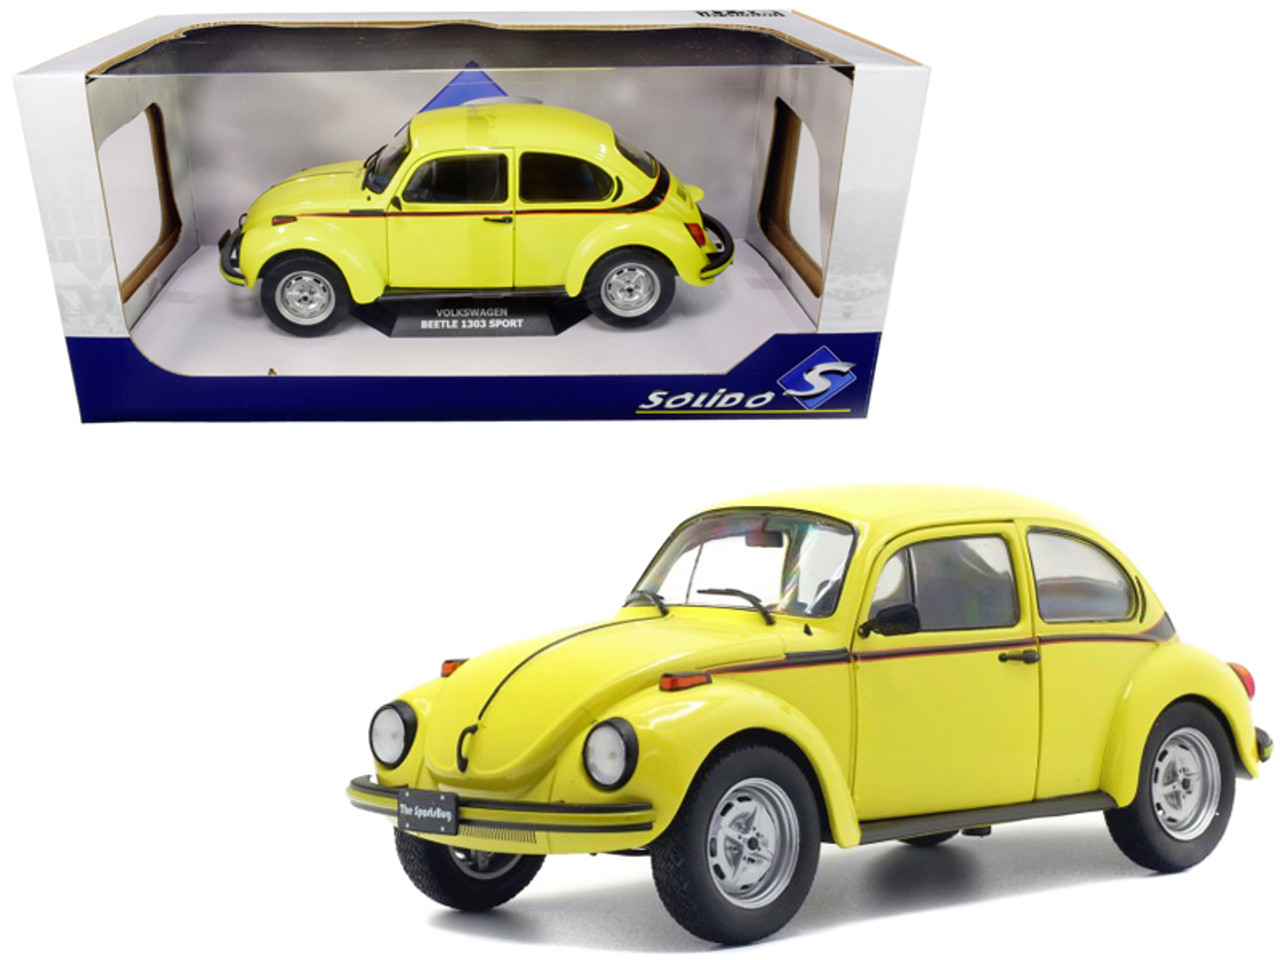 1/18 Solido Volkswagen Beetle 1303 Sport (Brilliant Gelb Yellow) Diecast Car Model